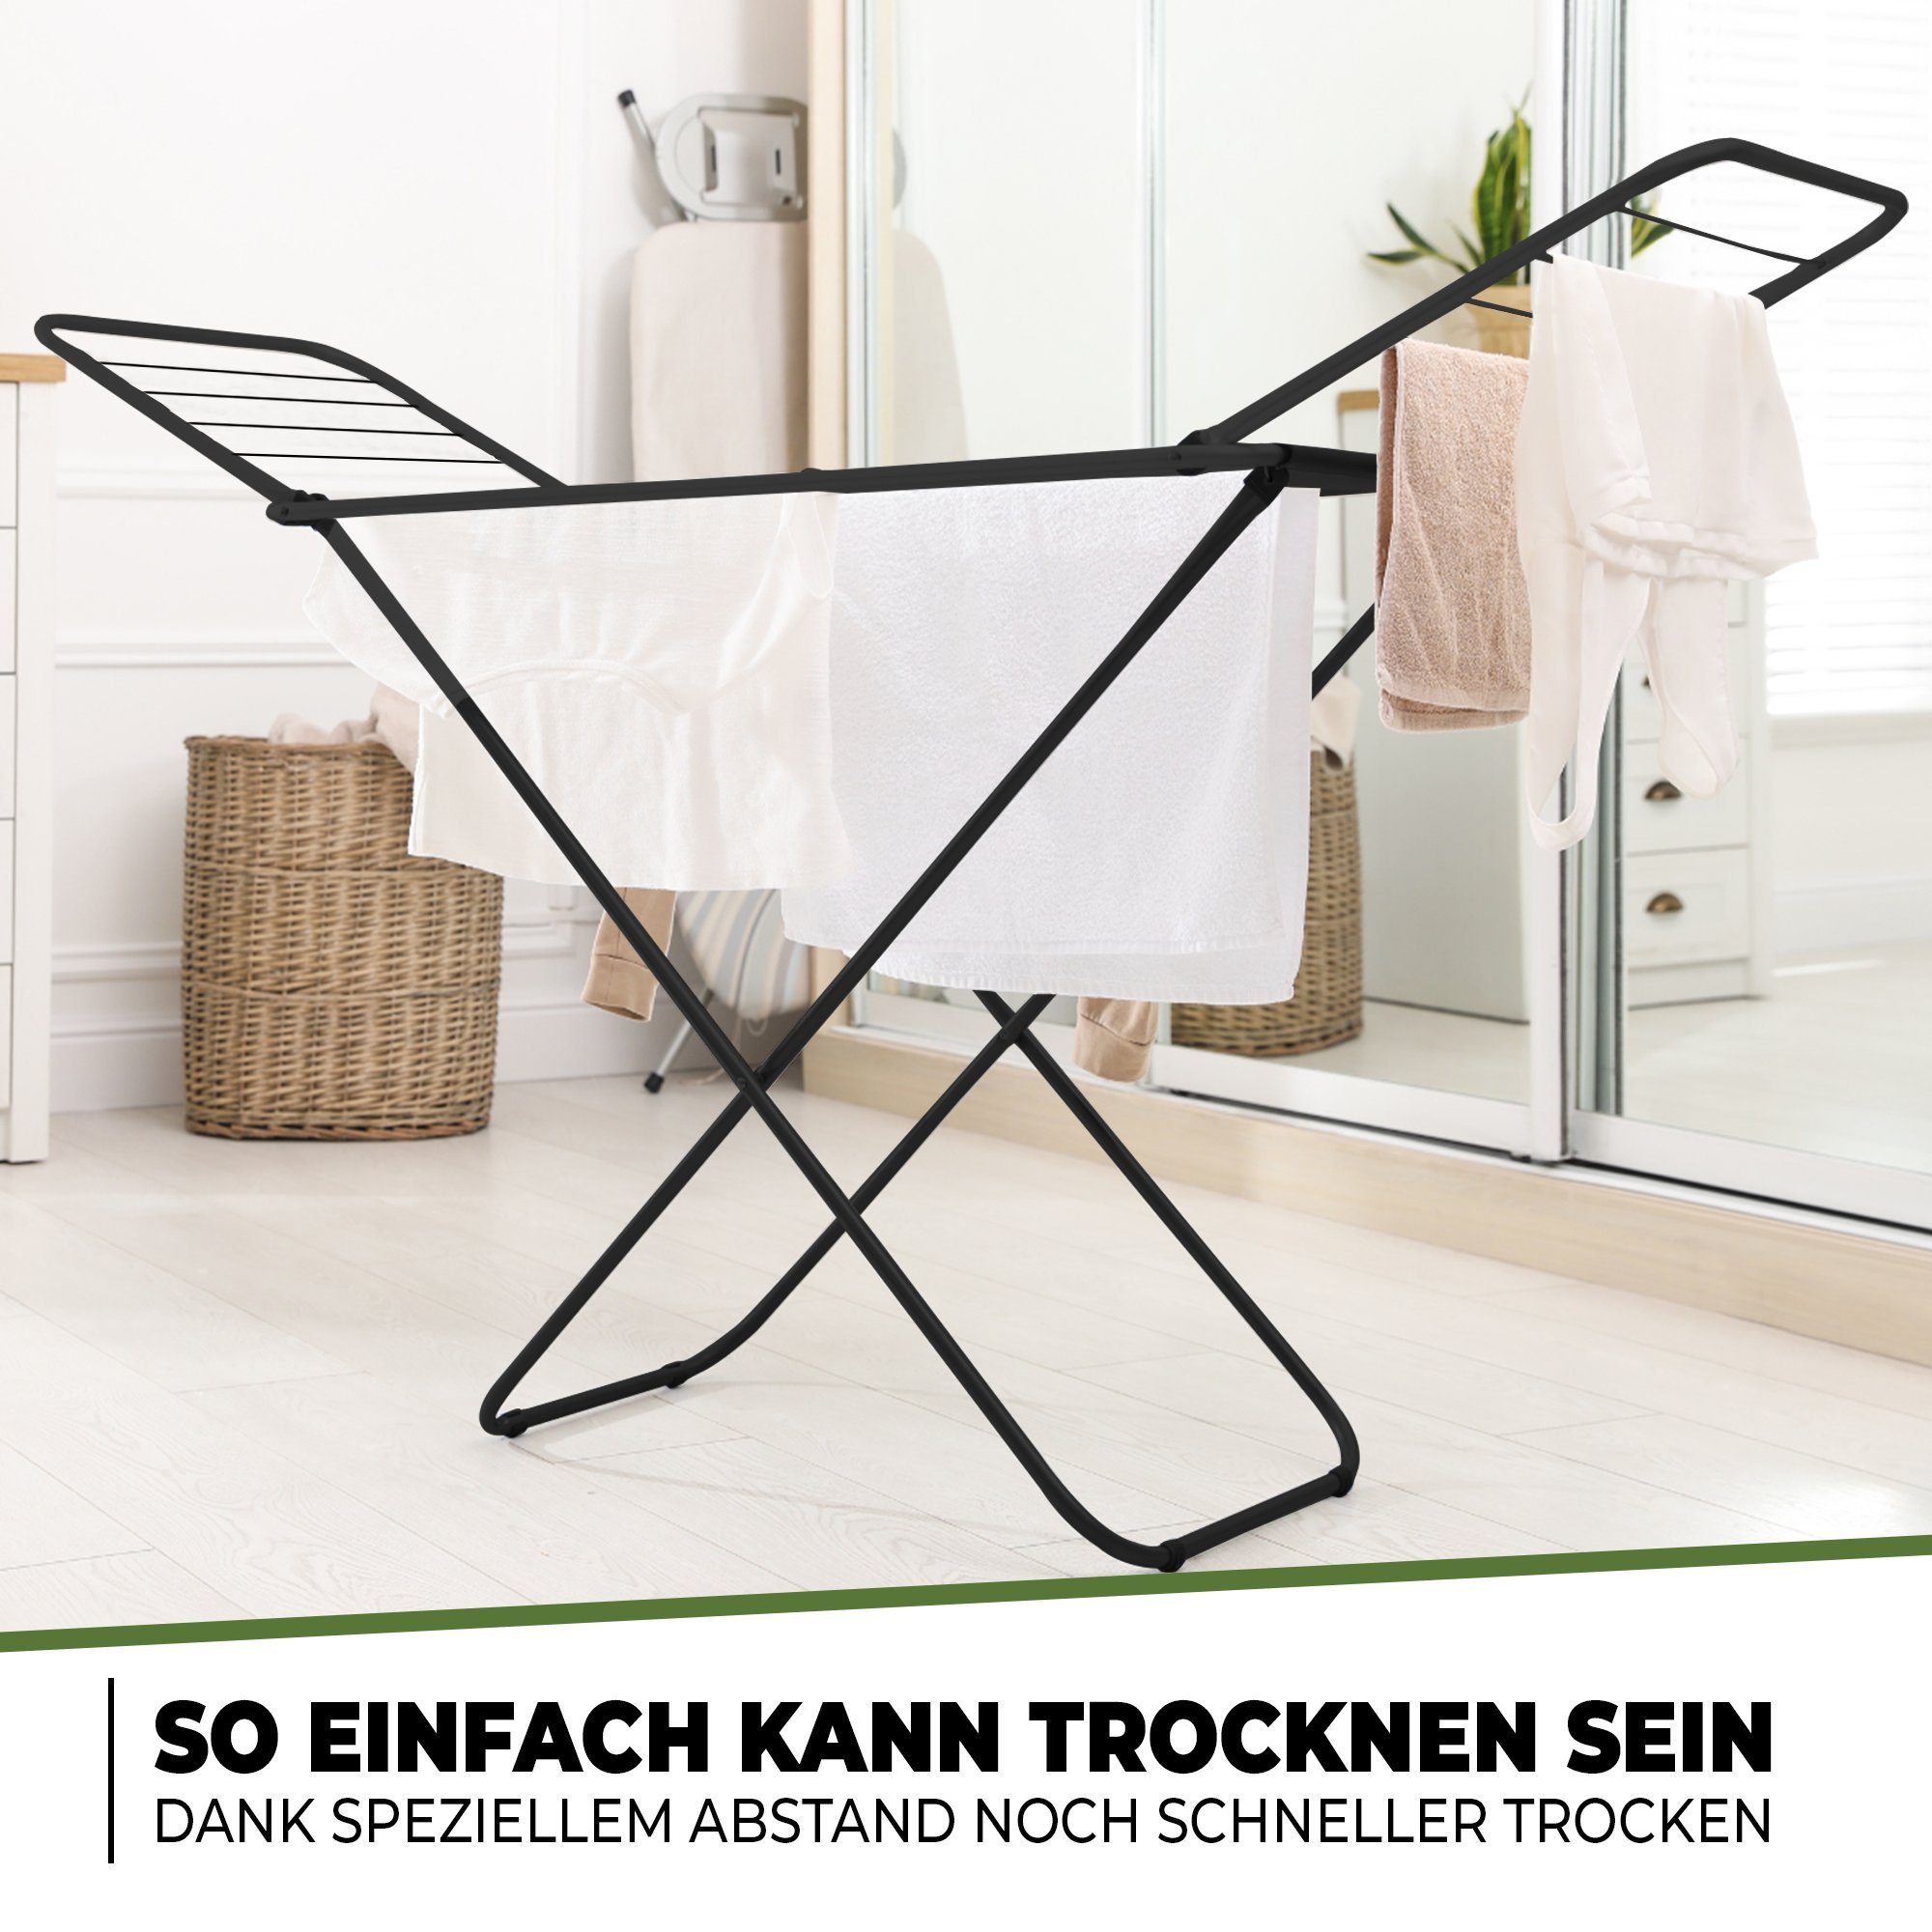 18m klappbarer extra Wäschetrockner, GmbH COMMERCE STAHLMANN ausziehbarer Wäscheständer Wäscheständer Flügelwäscheständer, stabiler